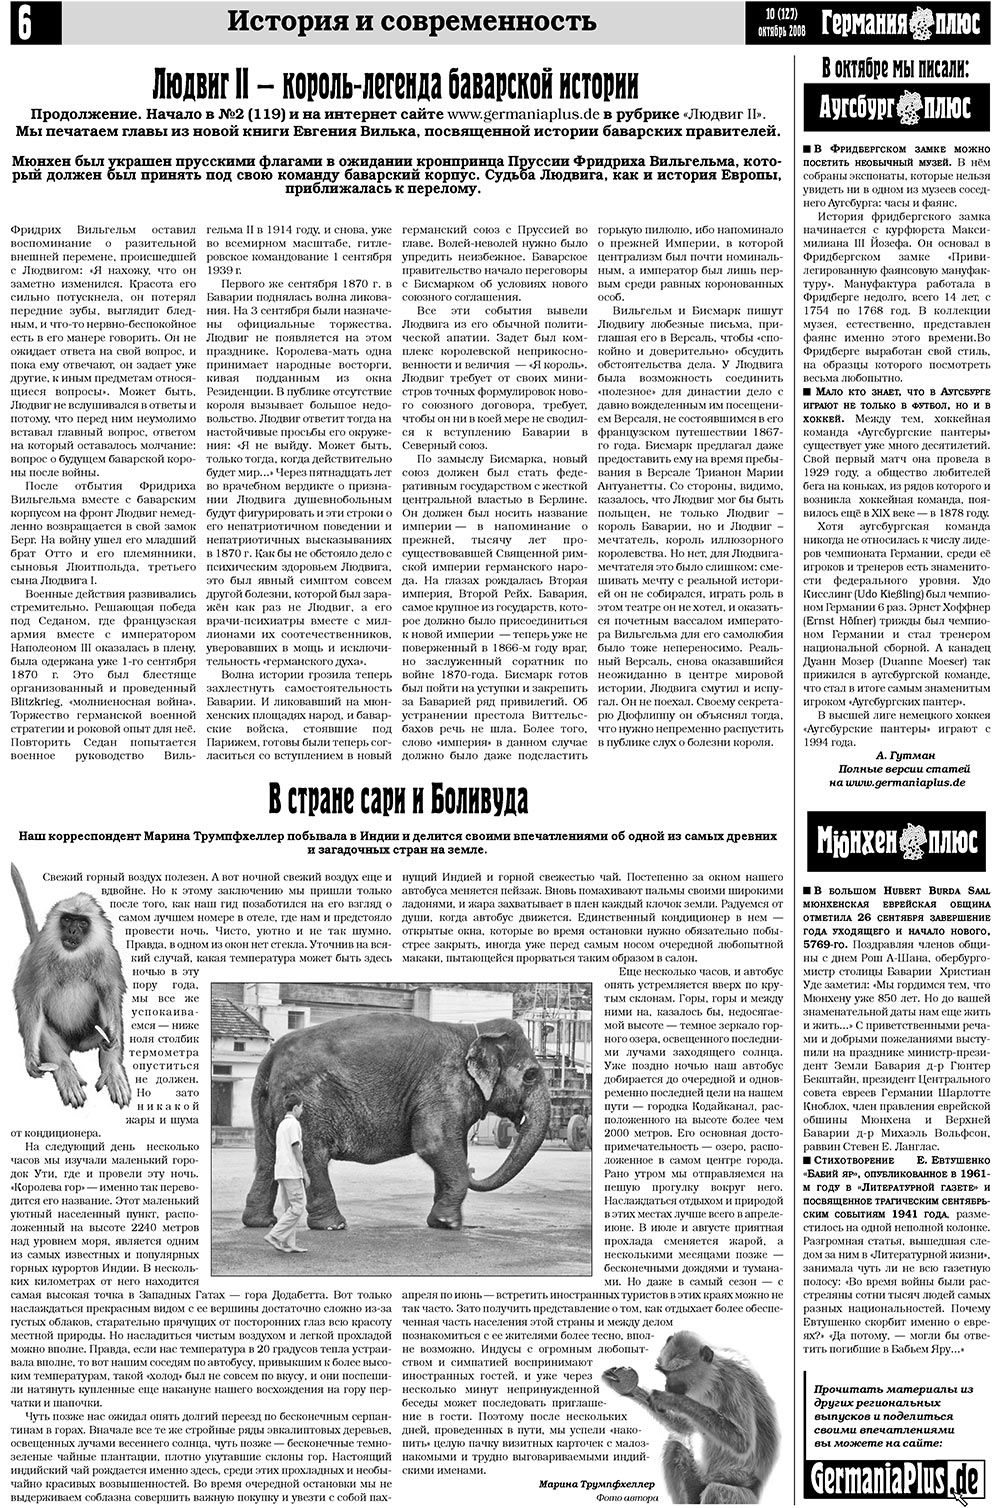 Германия плюс, газета. 2008 №10 стр.6